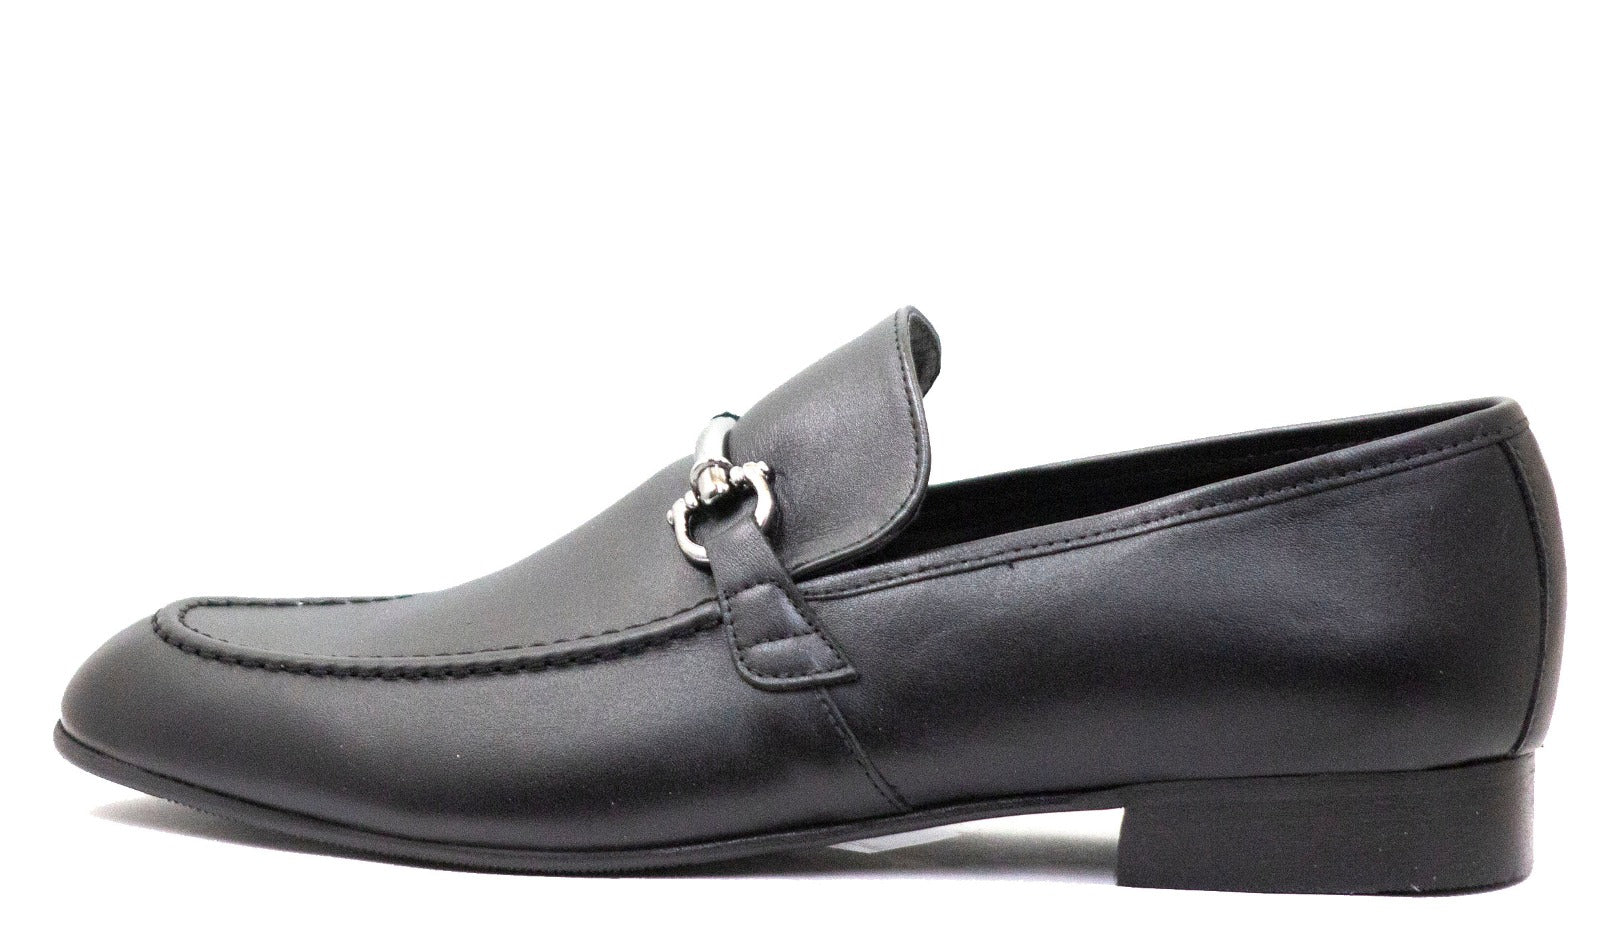 Andanines Boys Black Leather Slip On Loafer Dress Shoe C77703